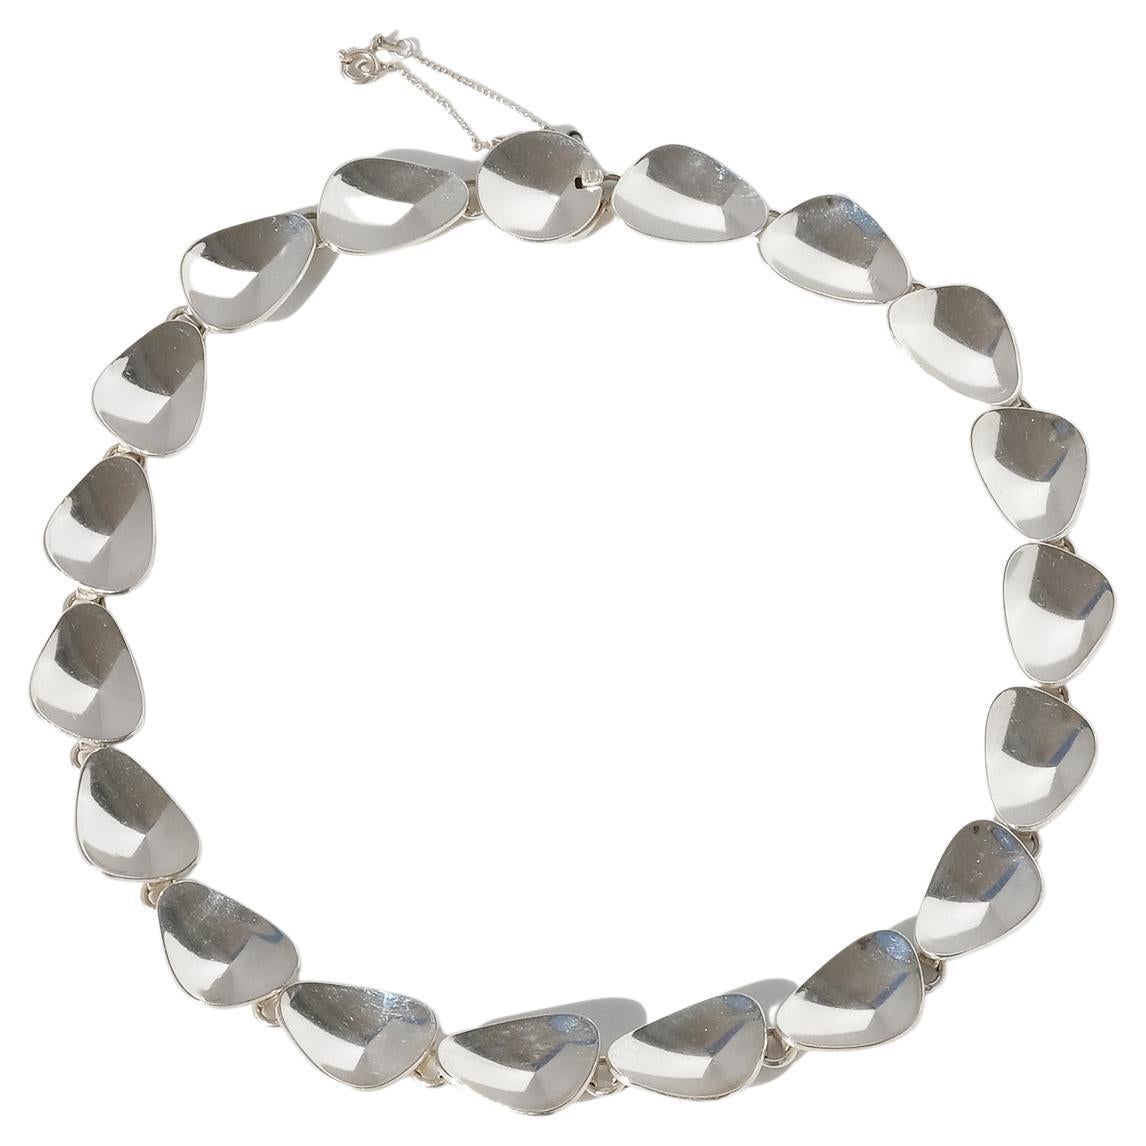 Diese silberne Halskette hat eine glänzende Oberfläche. Die kleinen Silberplättchen sind als perfekte Silbermuscheln geformt und mit Silberringen miteinander verbunden. Die Halskette lässt sich mit einem Kastenverschluss leicht schließen und hat